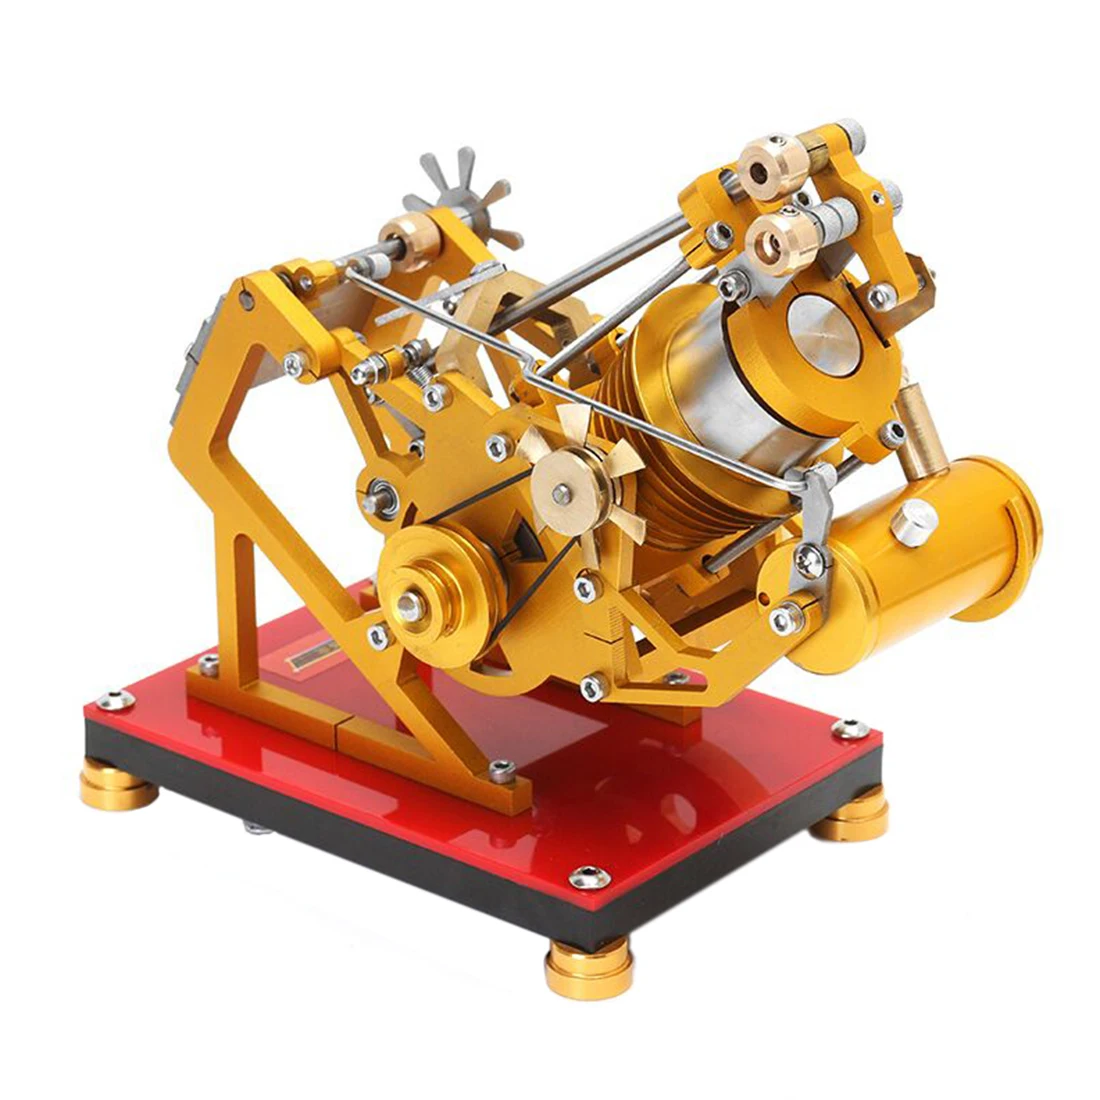 Цельнометаллический всасывающий тип и вакуумная Модель двигателя Стирлинга Поддержка двигателя тестирование игрушек